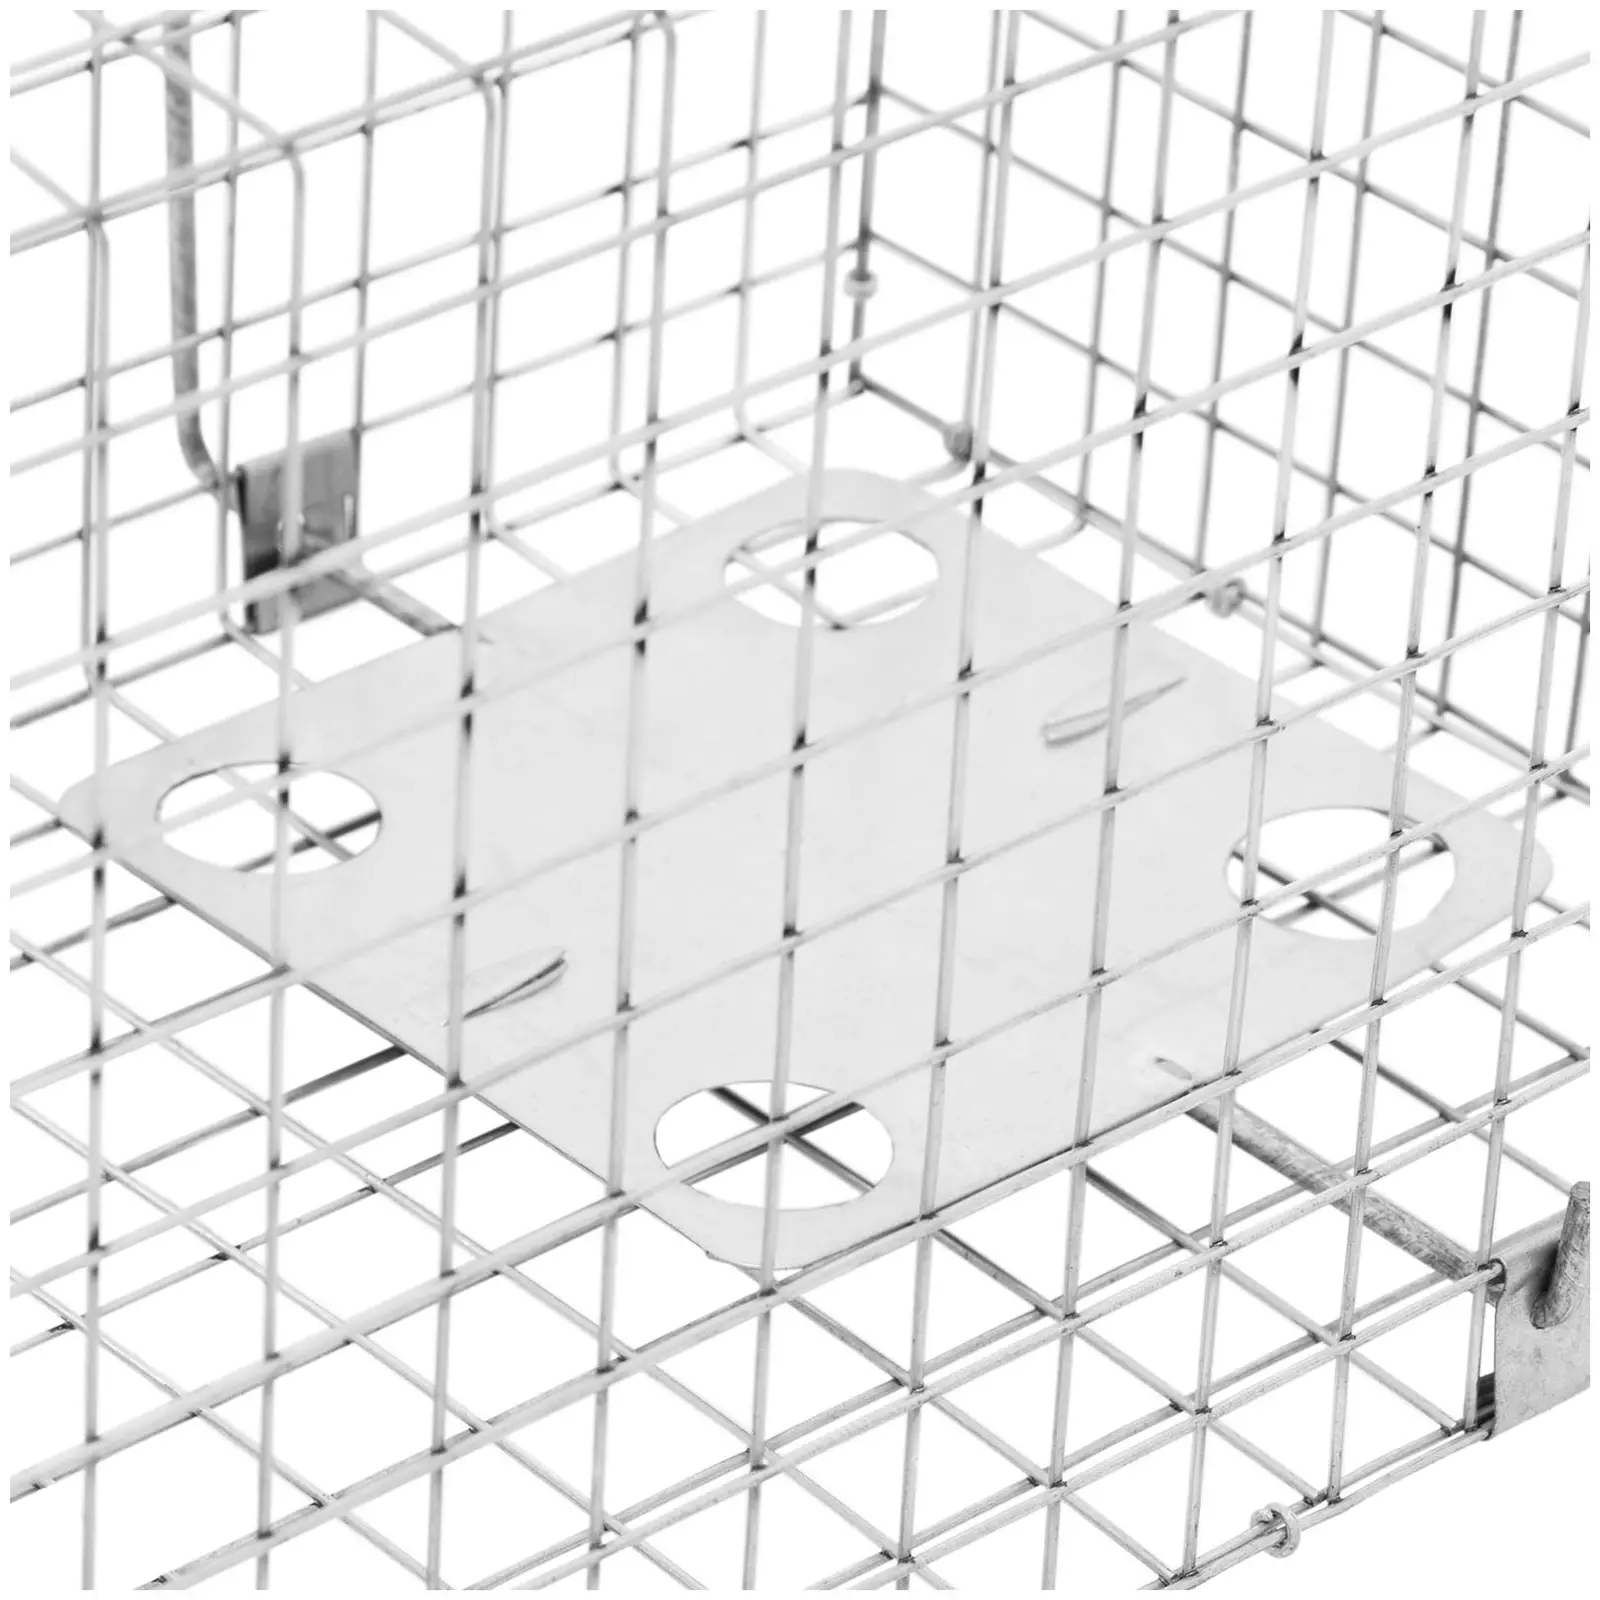 Trappola per animali - 82 x 29.5 x 29 cm - Dimensioni della grata: 25x25 mm